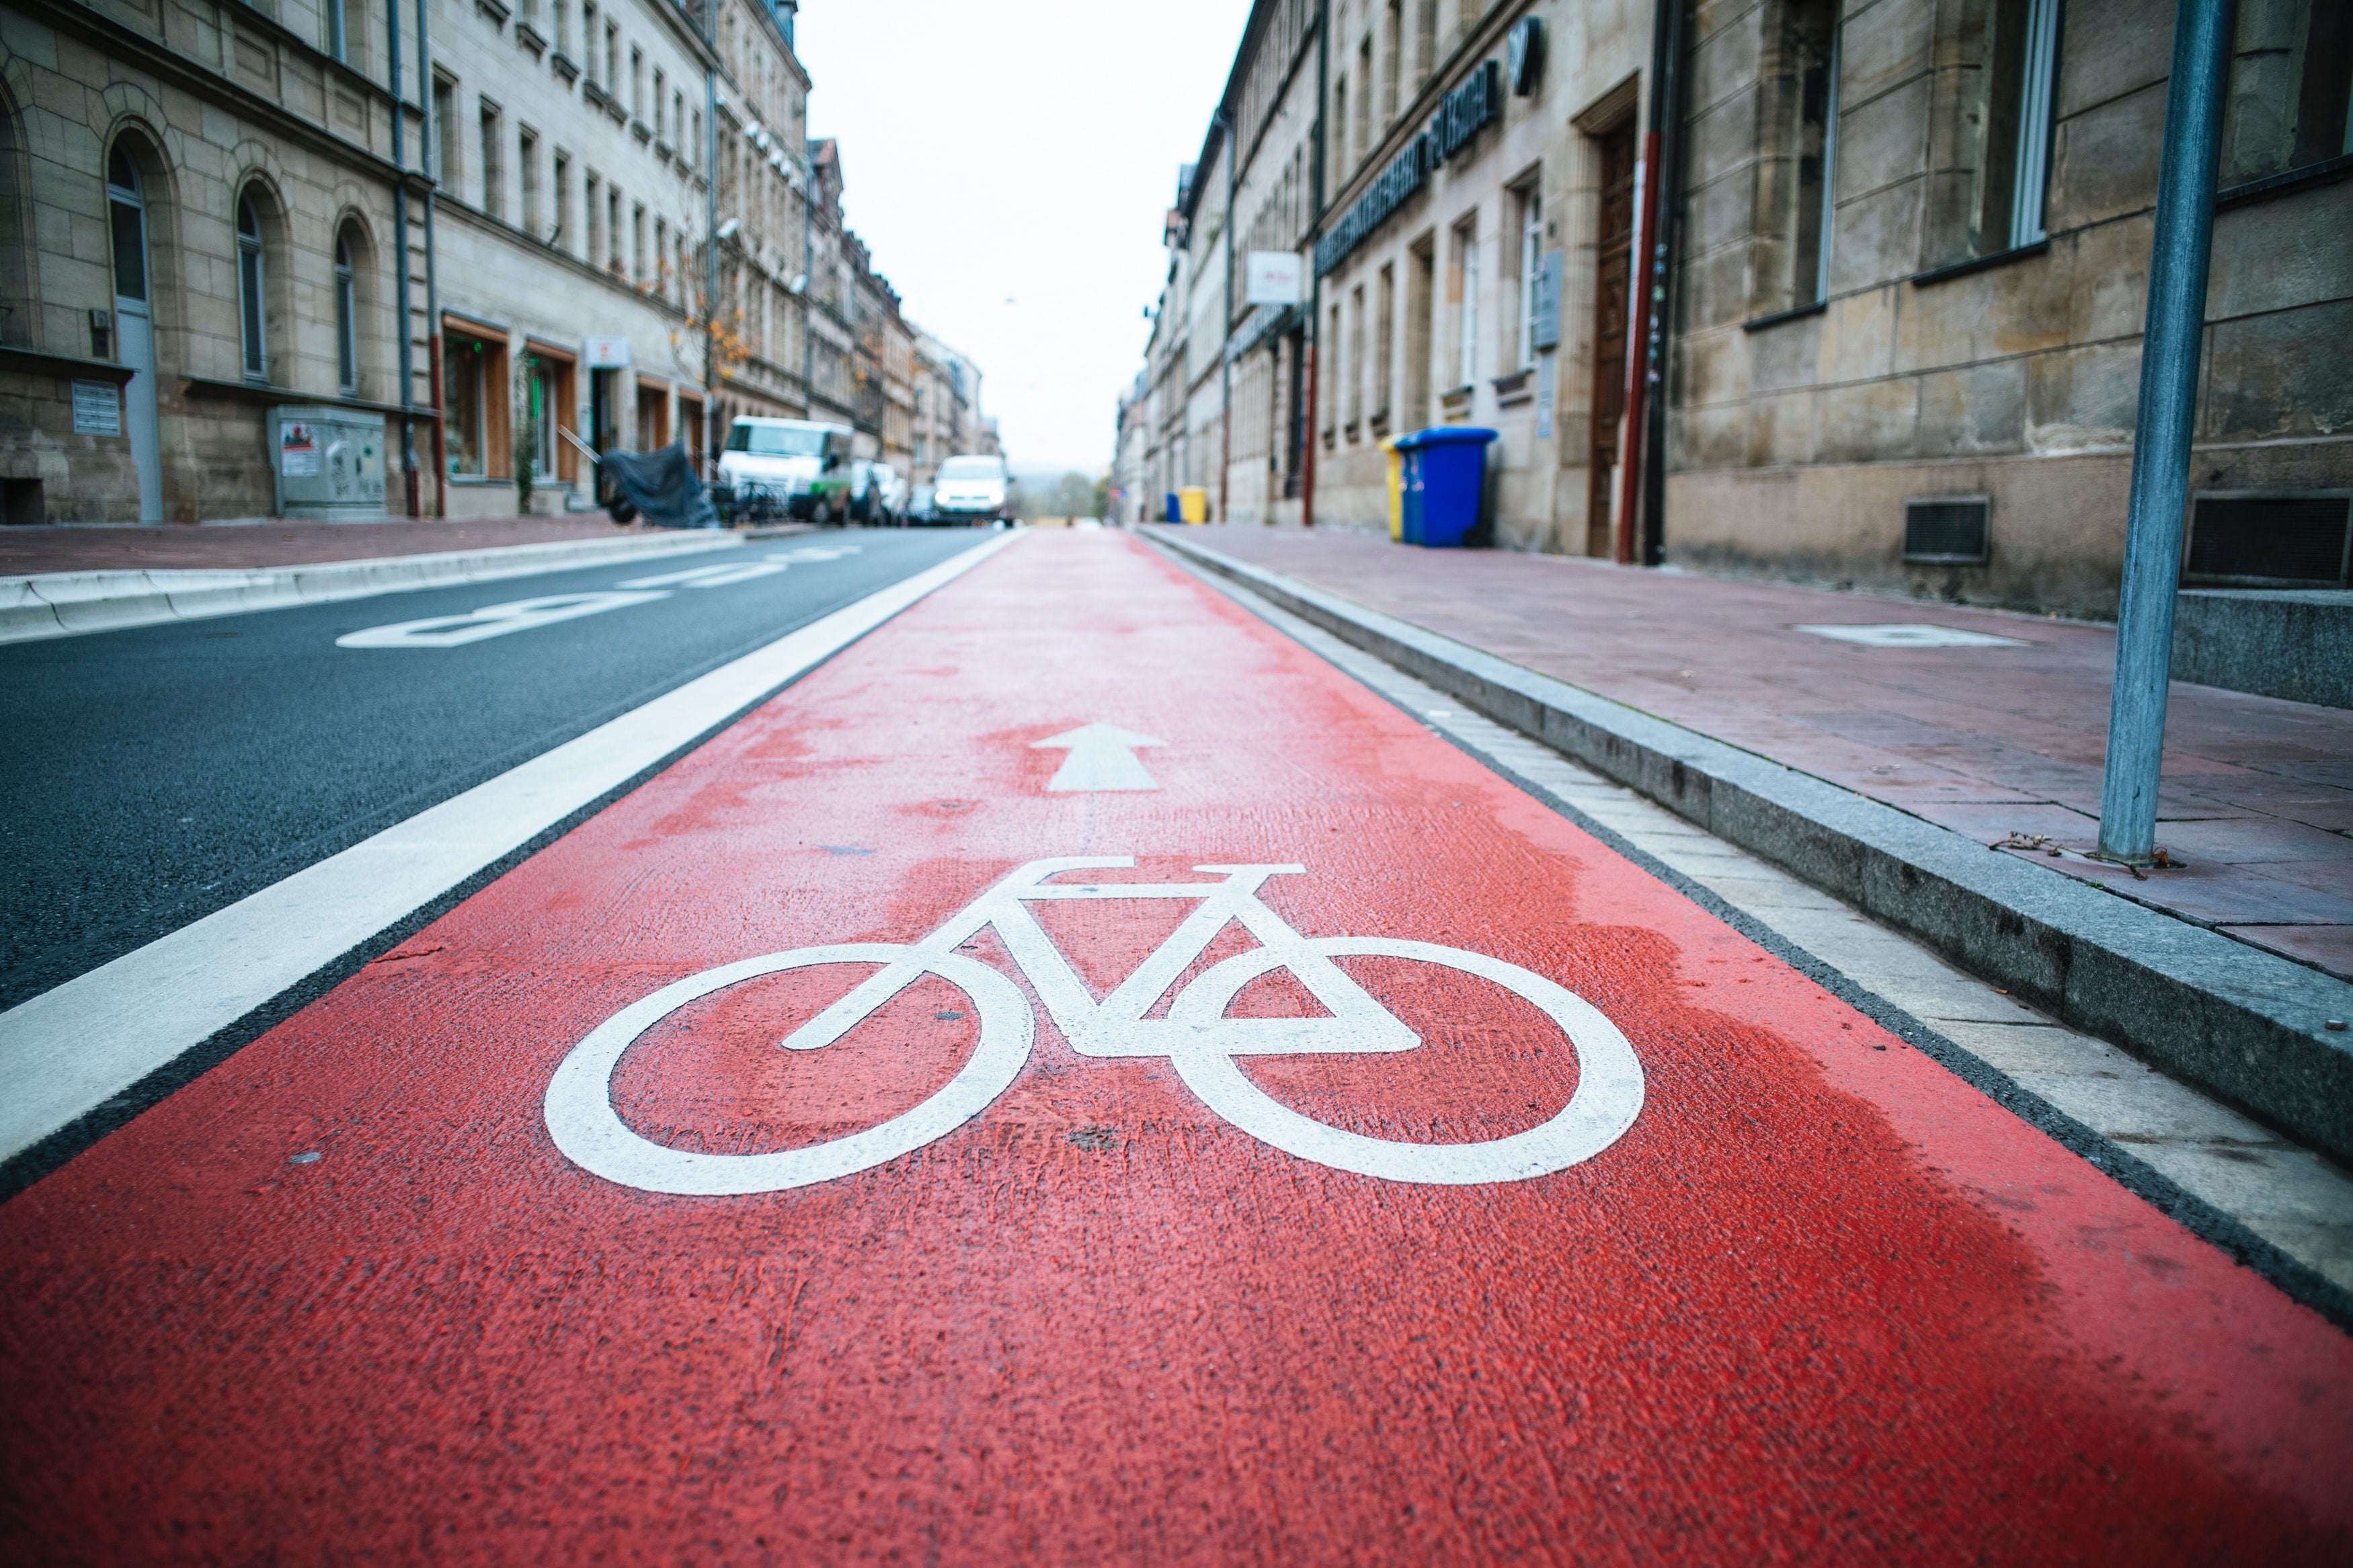 Electric Bike lane